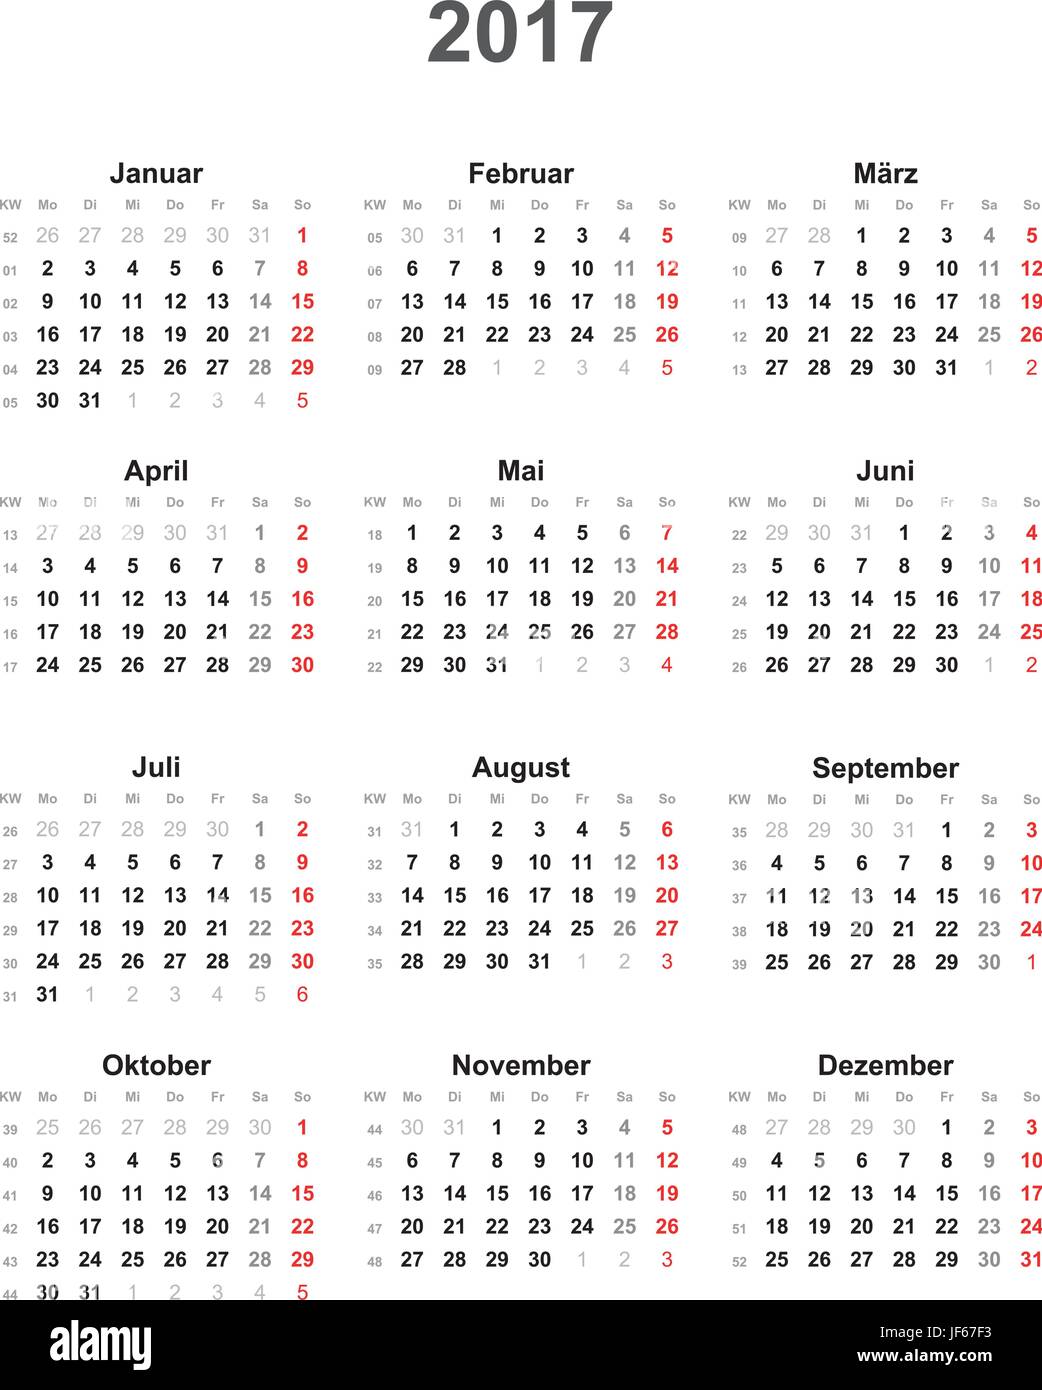 Kalender Vector Images - Alamy